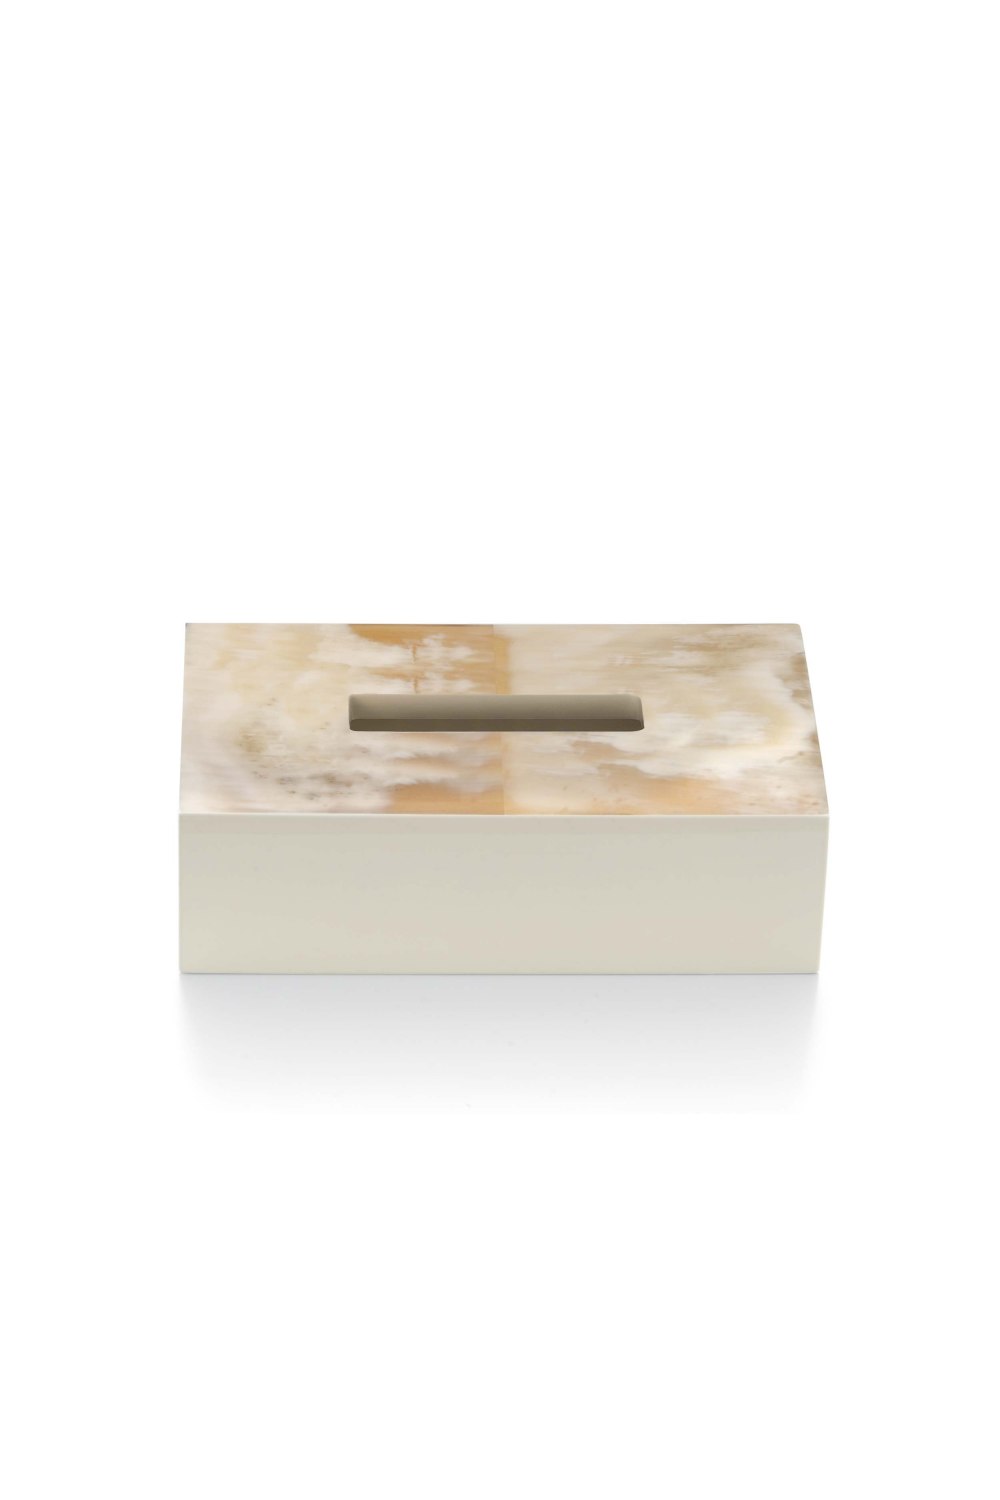 ARCAHORN - ARMIDA Tissue Box Holder